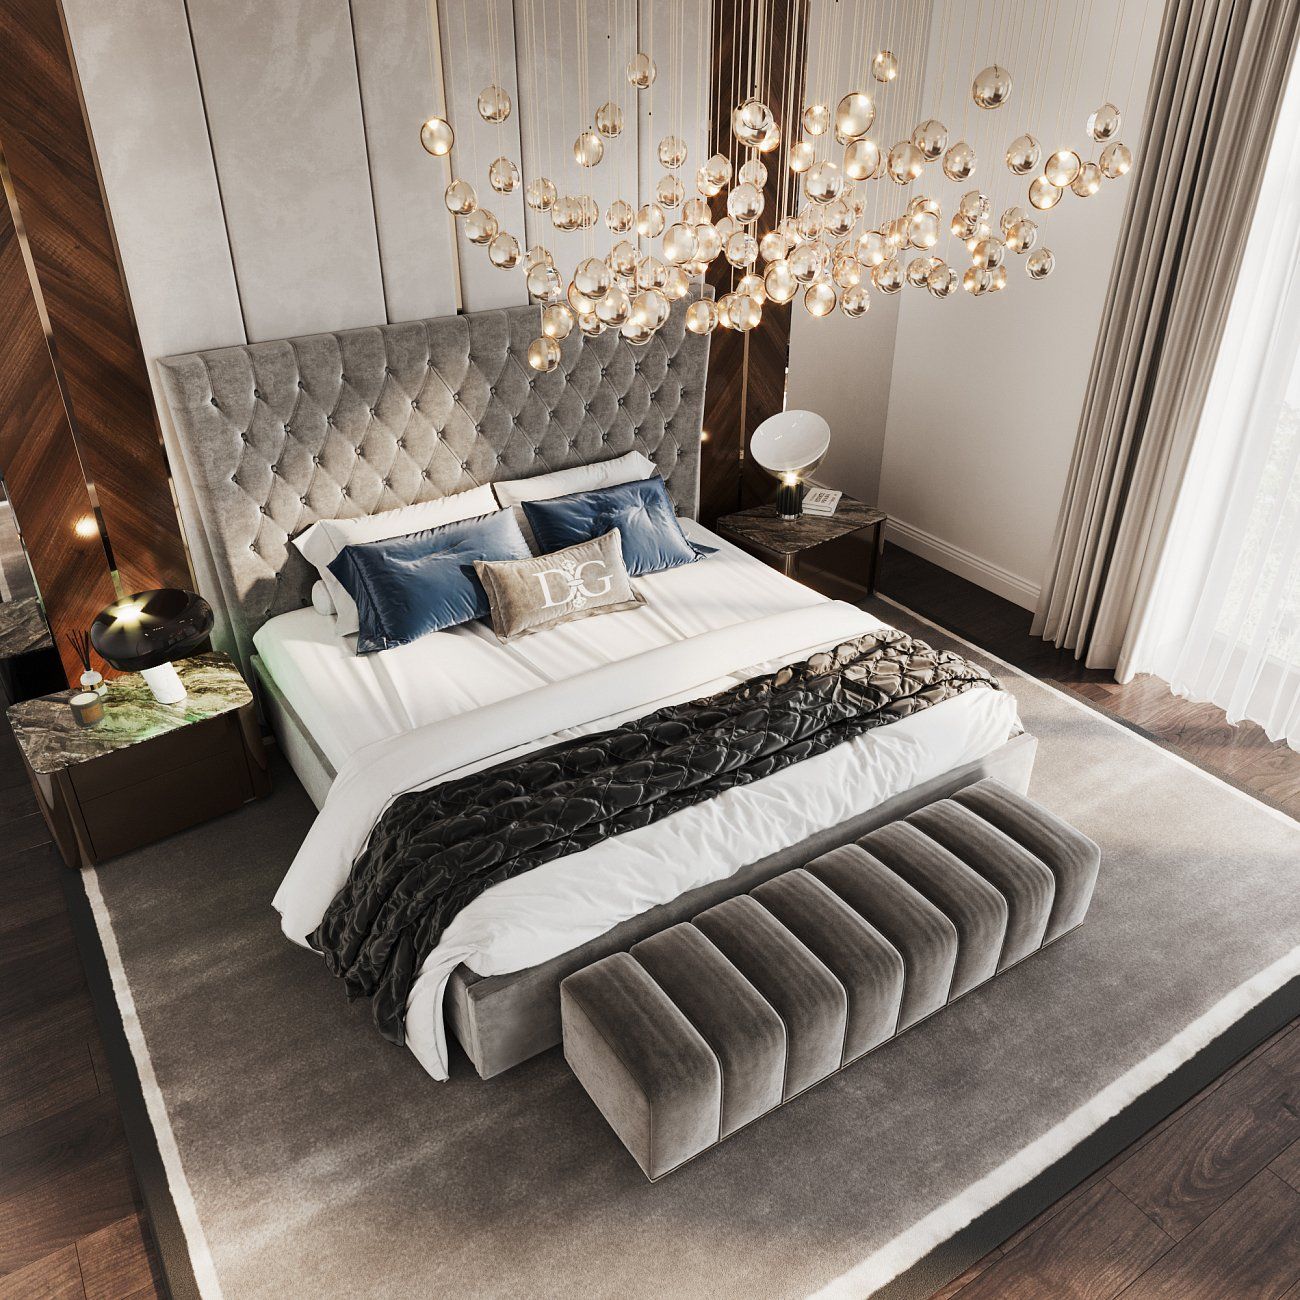 Кровать подростковая с каретной стяжкой 140х200 серо-коричневая QuickSand